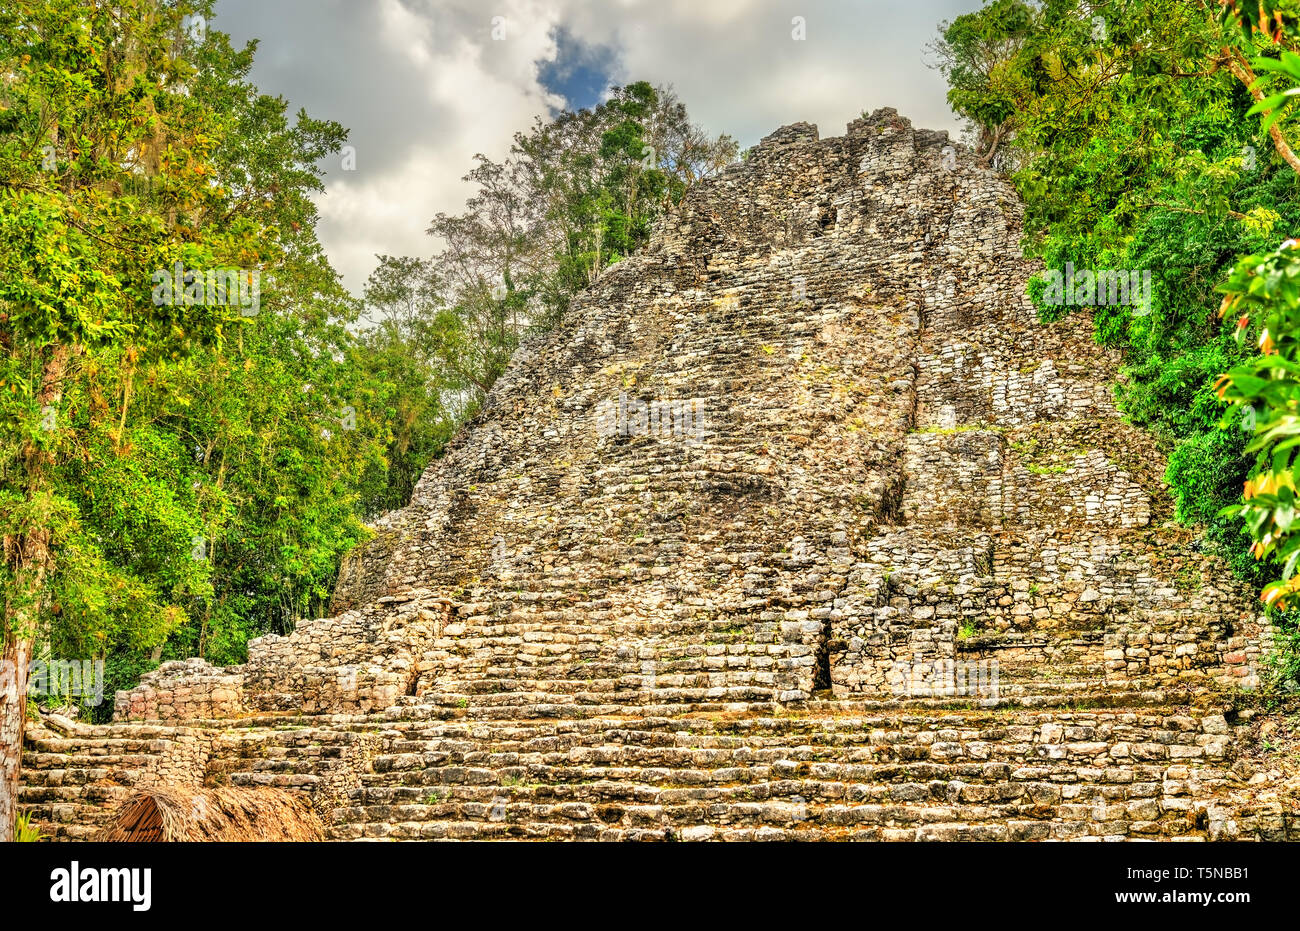 Mayan Pyramid at Coba in Mexico Stock Photo